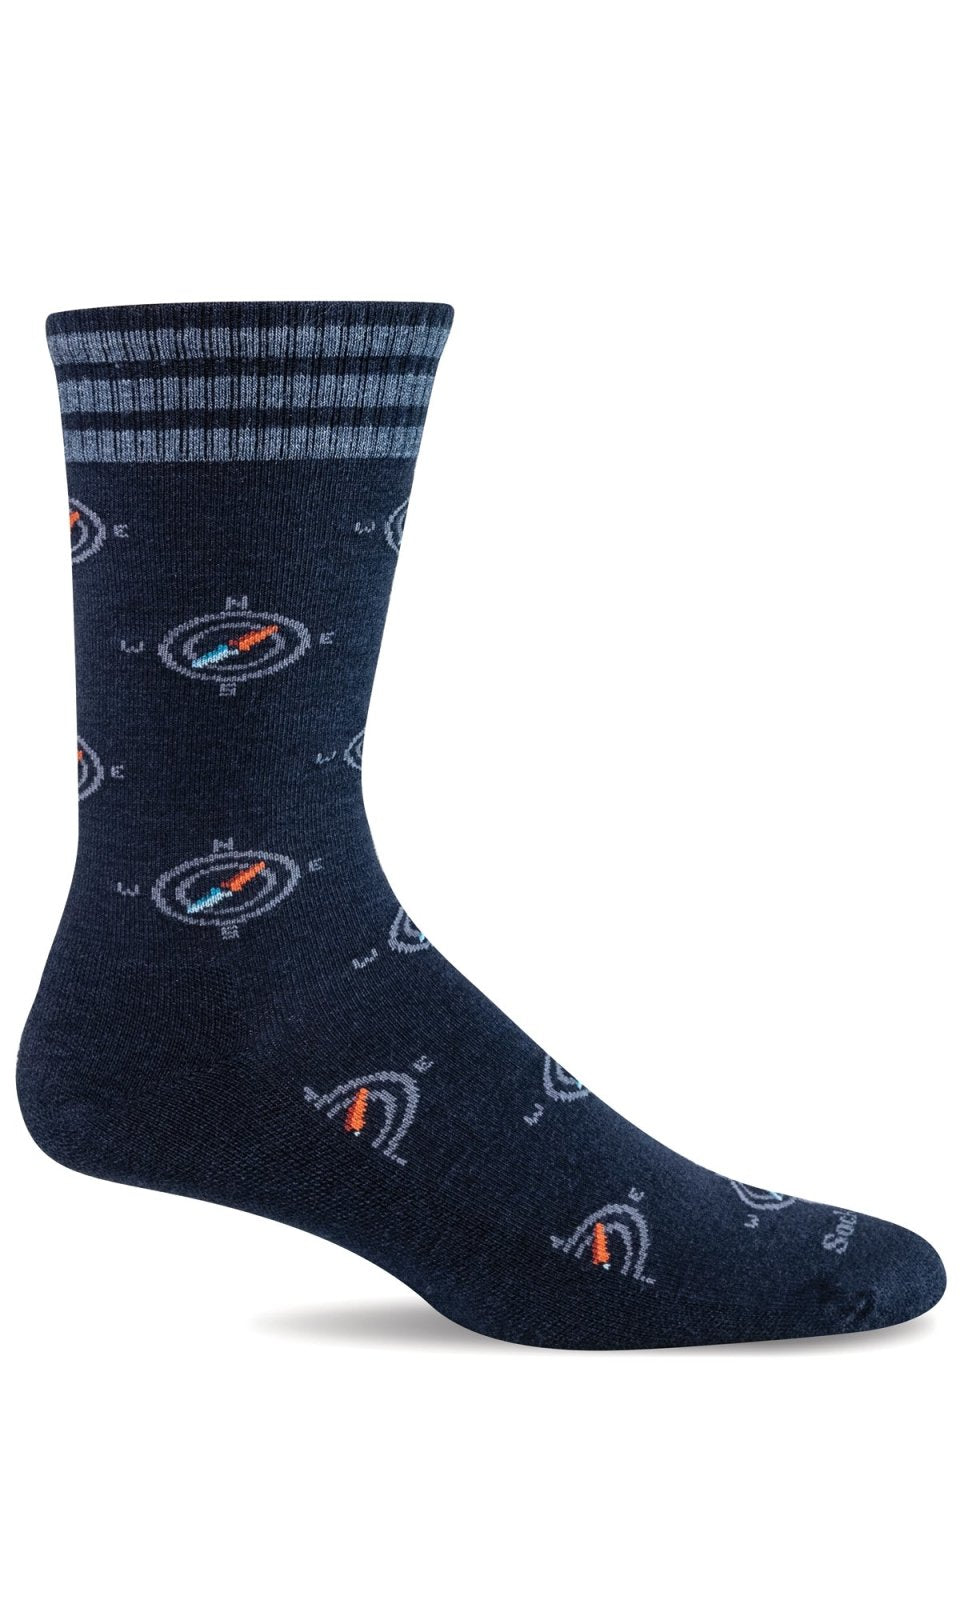 Men's Navigator | Essential Comfort Socks - Merino Wool Socks - Sockwell